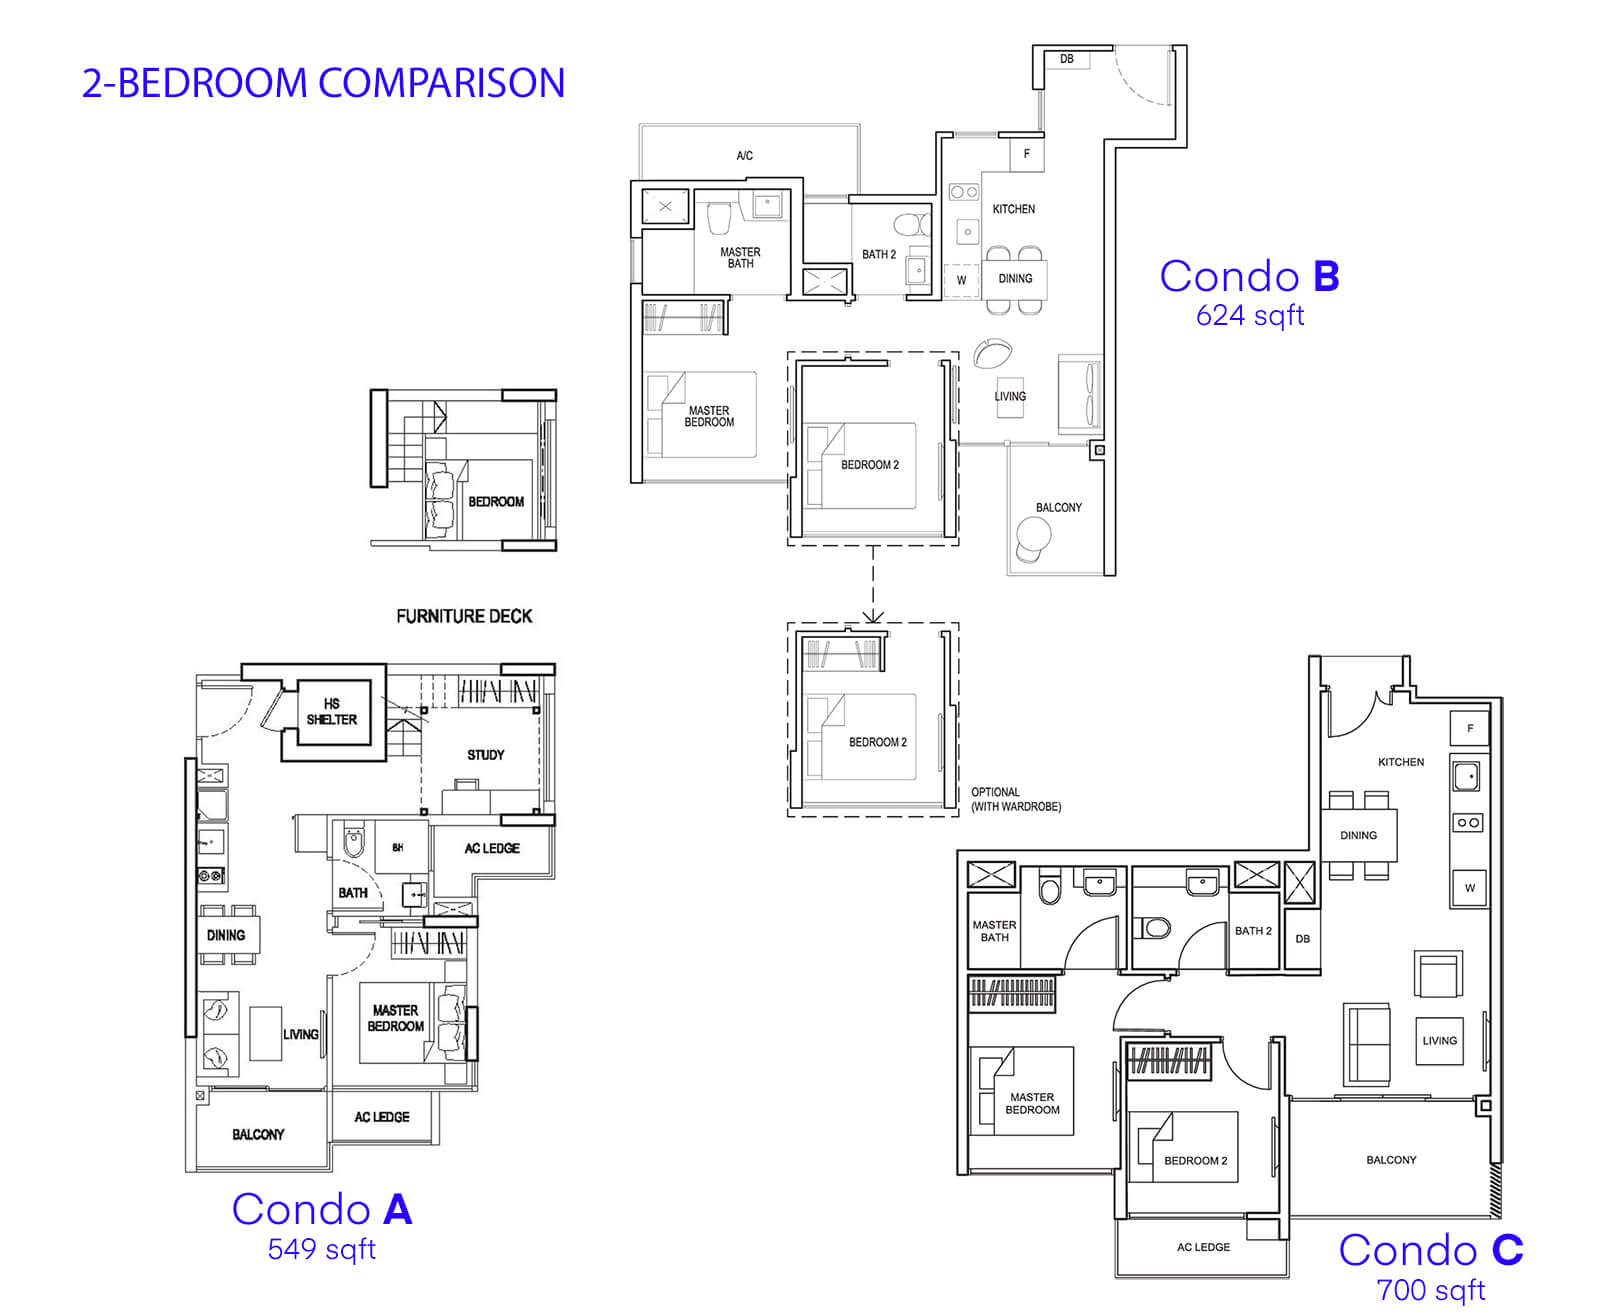 Tanah Merah Condo 2-Bedroom Comparison